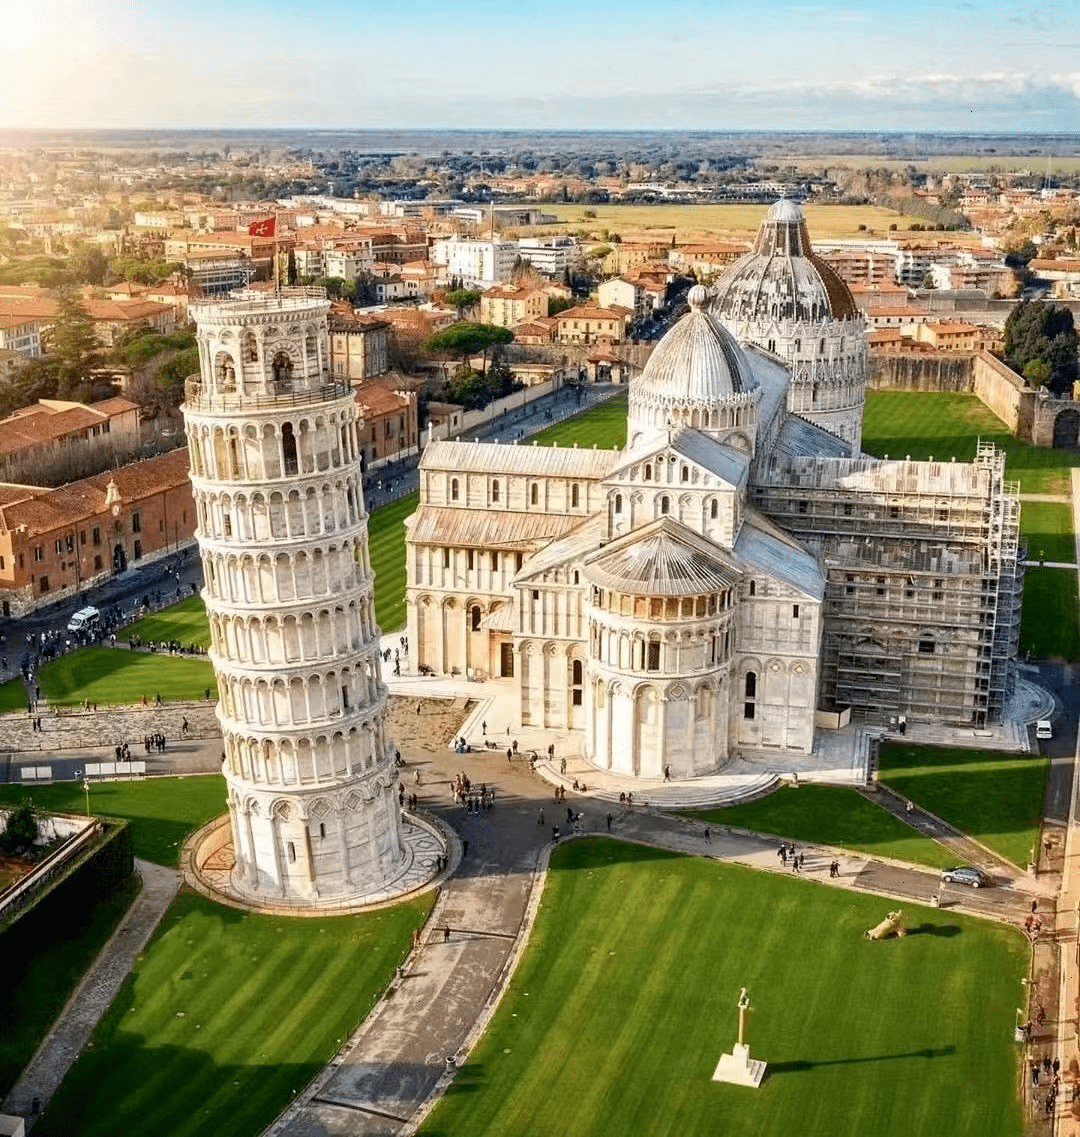 意大利的标志性建筑位于比萨的中央广场—奇迹广场比萨大教堂的一座